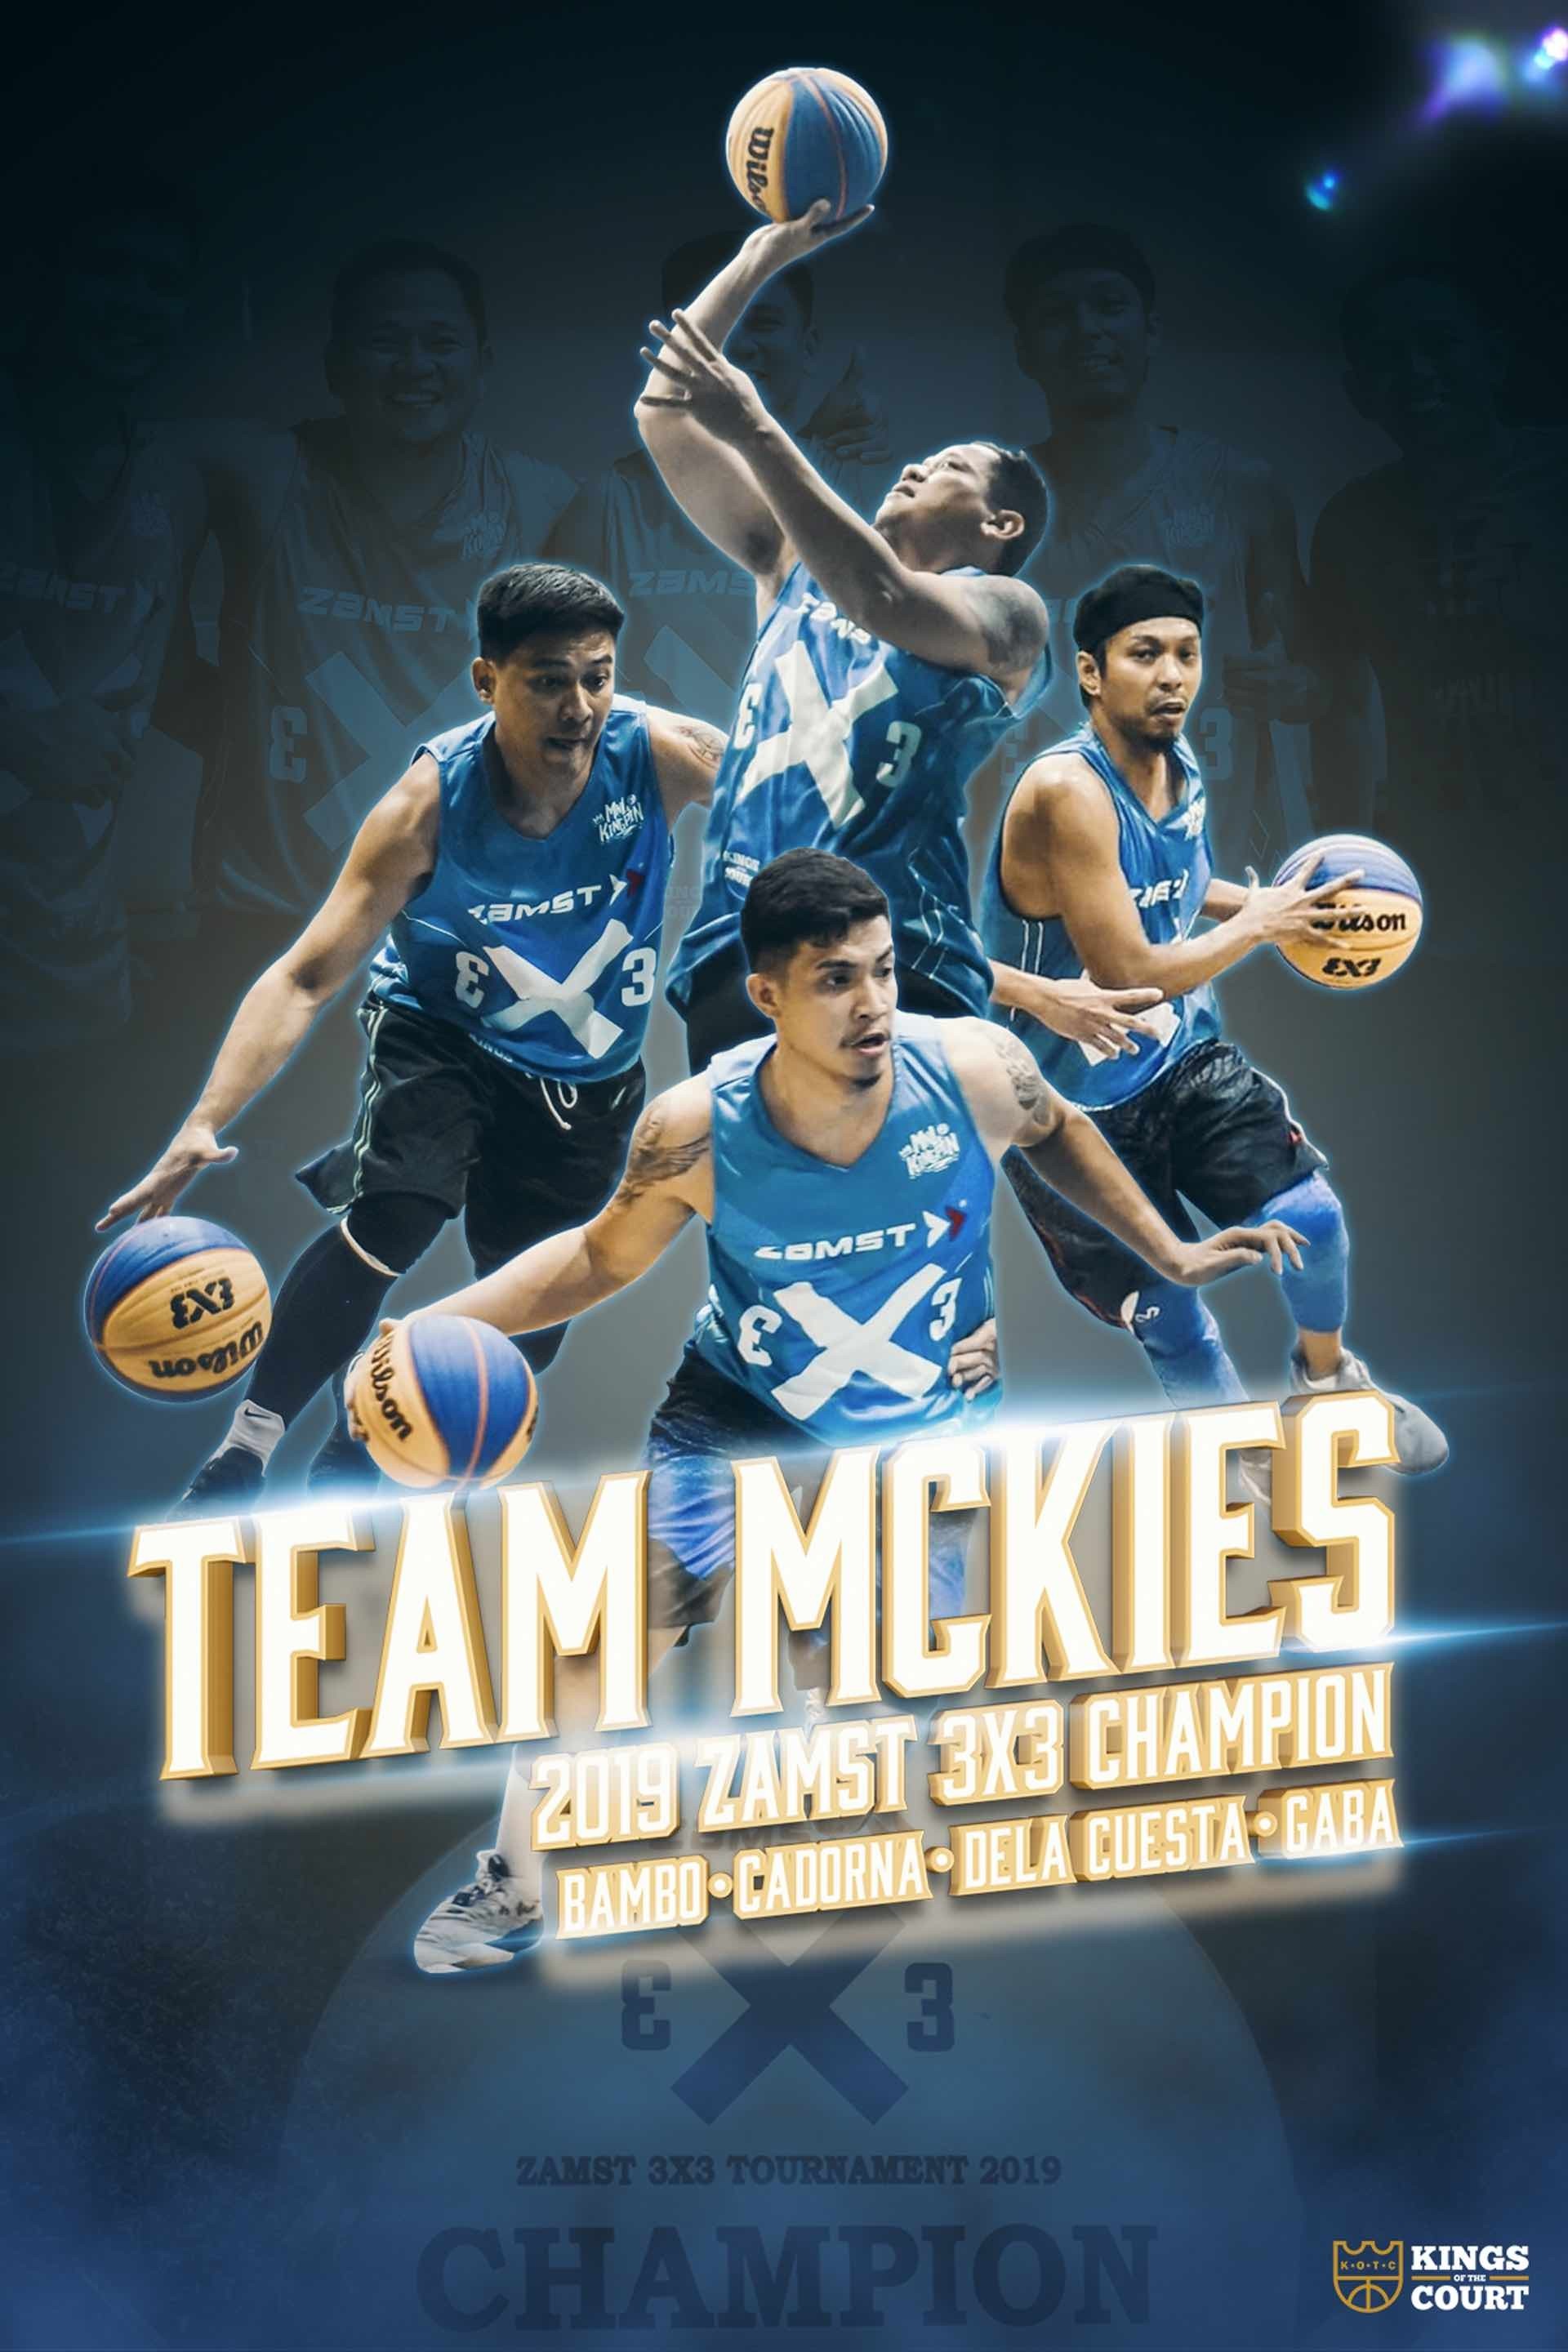 Team-Mckie.jpg